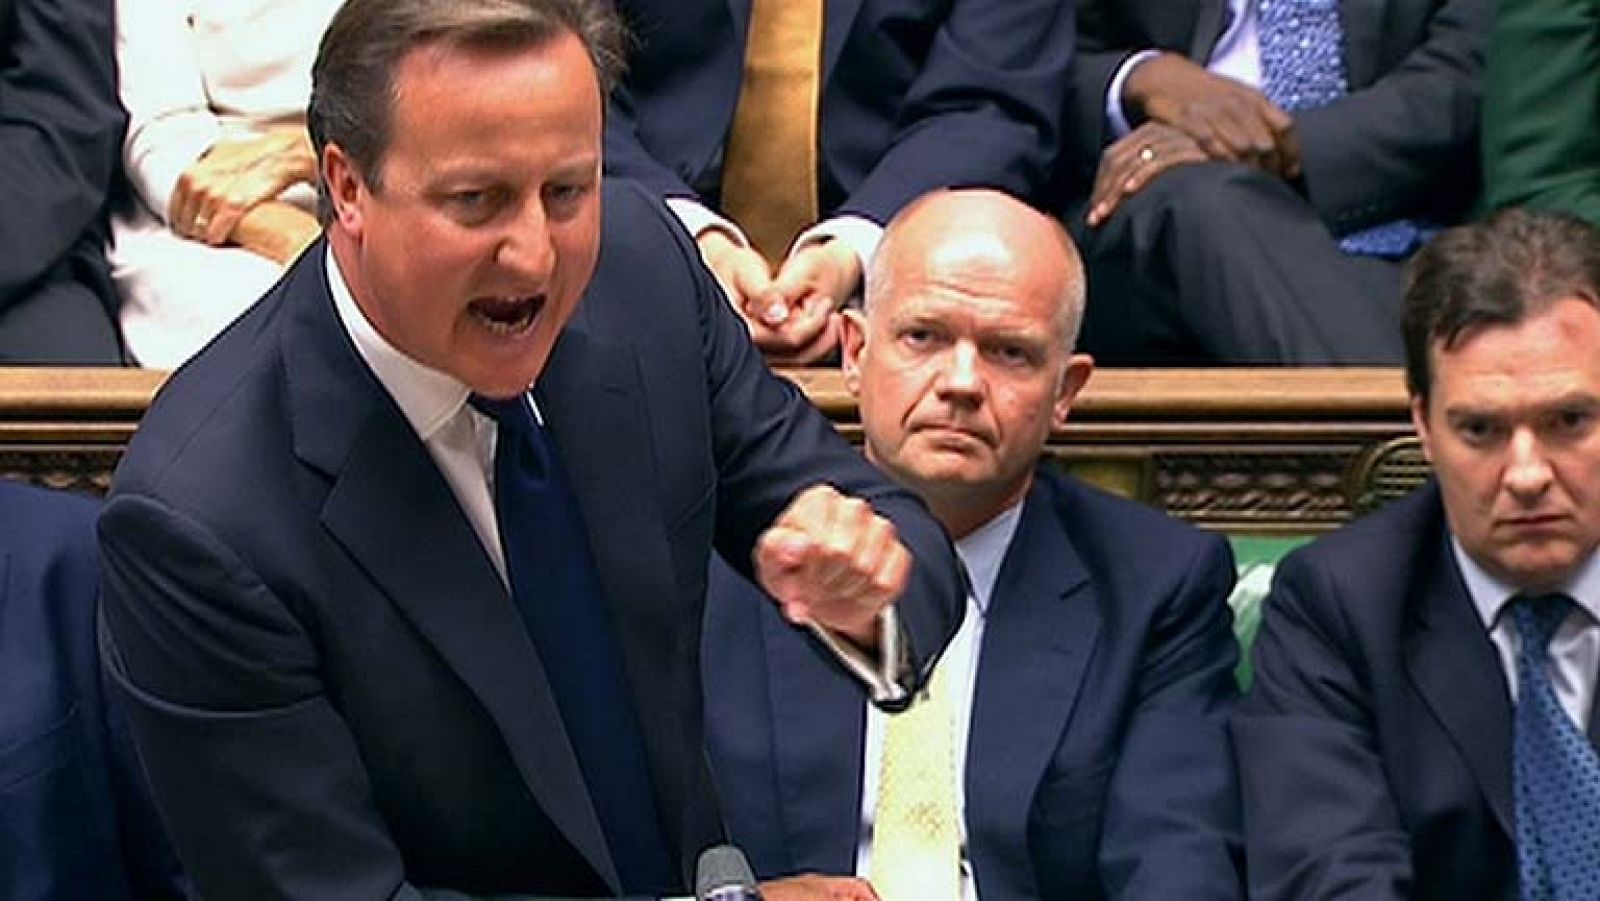  Cameron rechaza cualquier comparación entre el posible ataque a Siria y la guerra de Irak